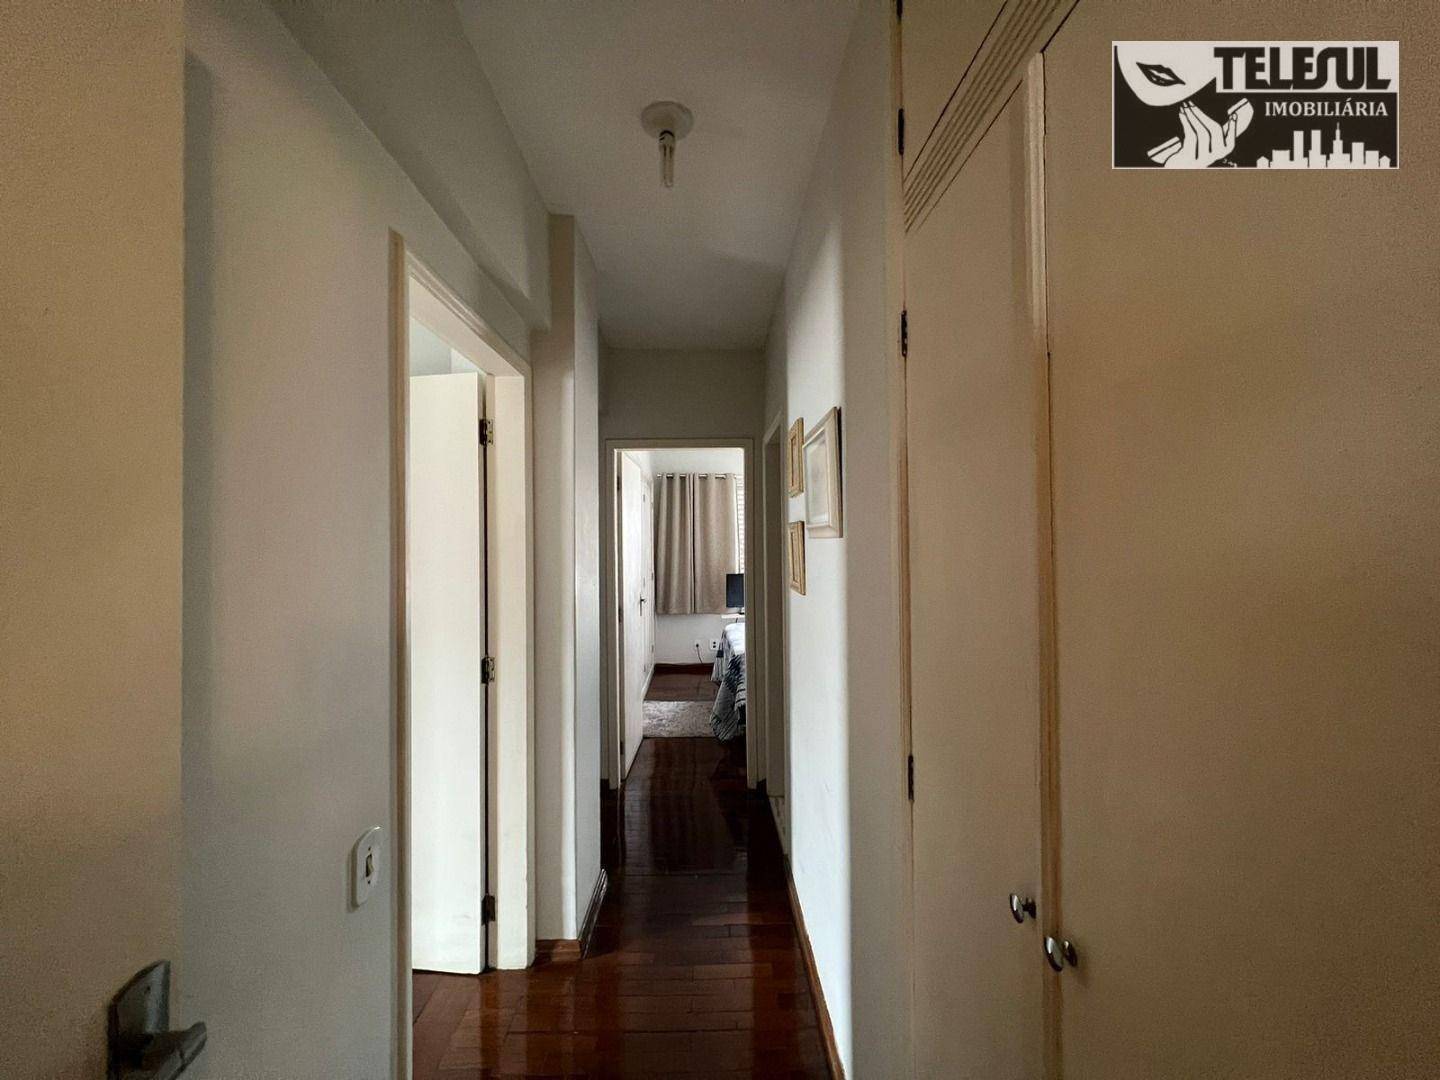 Apartamento, 3 quartos - Foto 2